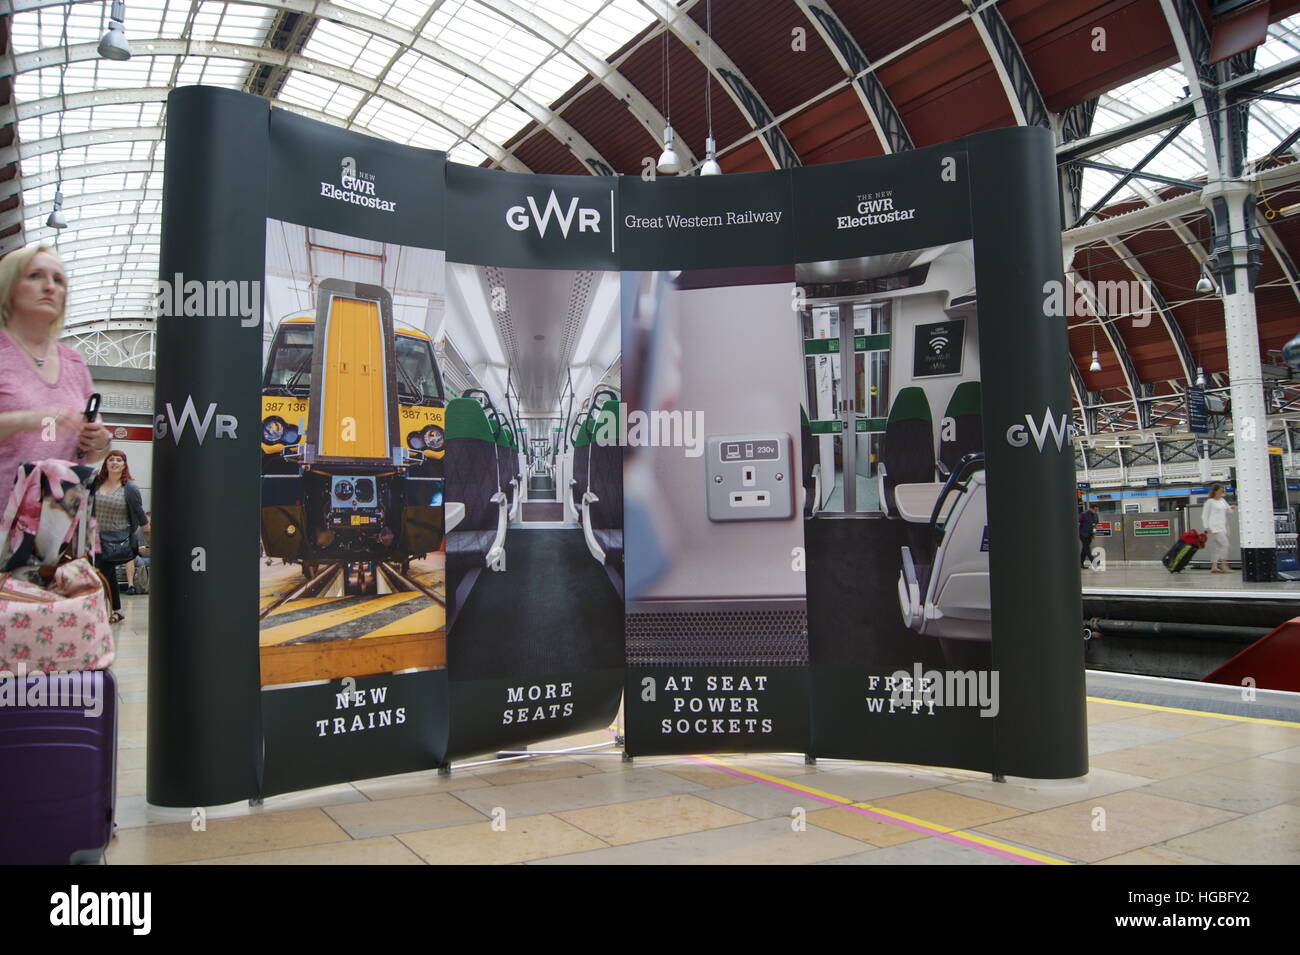 Ein Banner, Förderung der GWR Electrostar Neugeräte in London Paddington am 2. September 2016 als die neuen Einheiten auf dem Display waren. Stockfoto